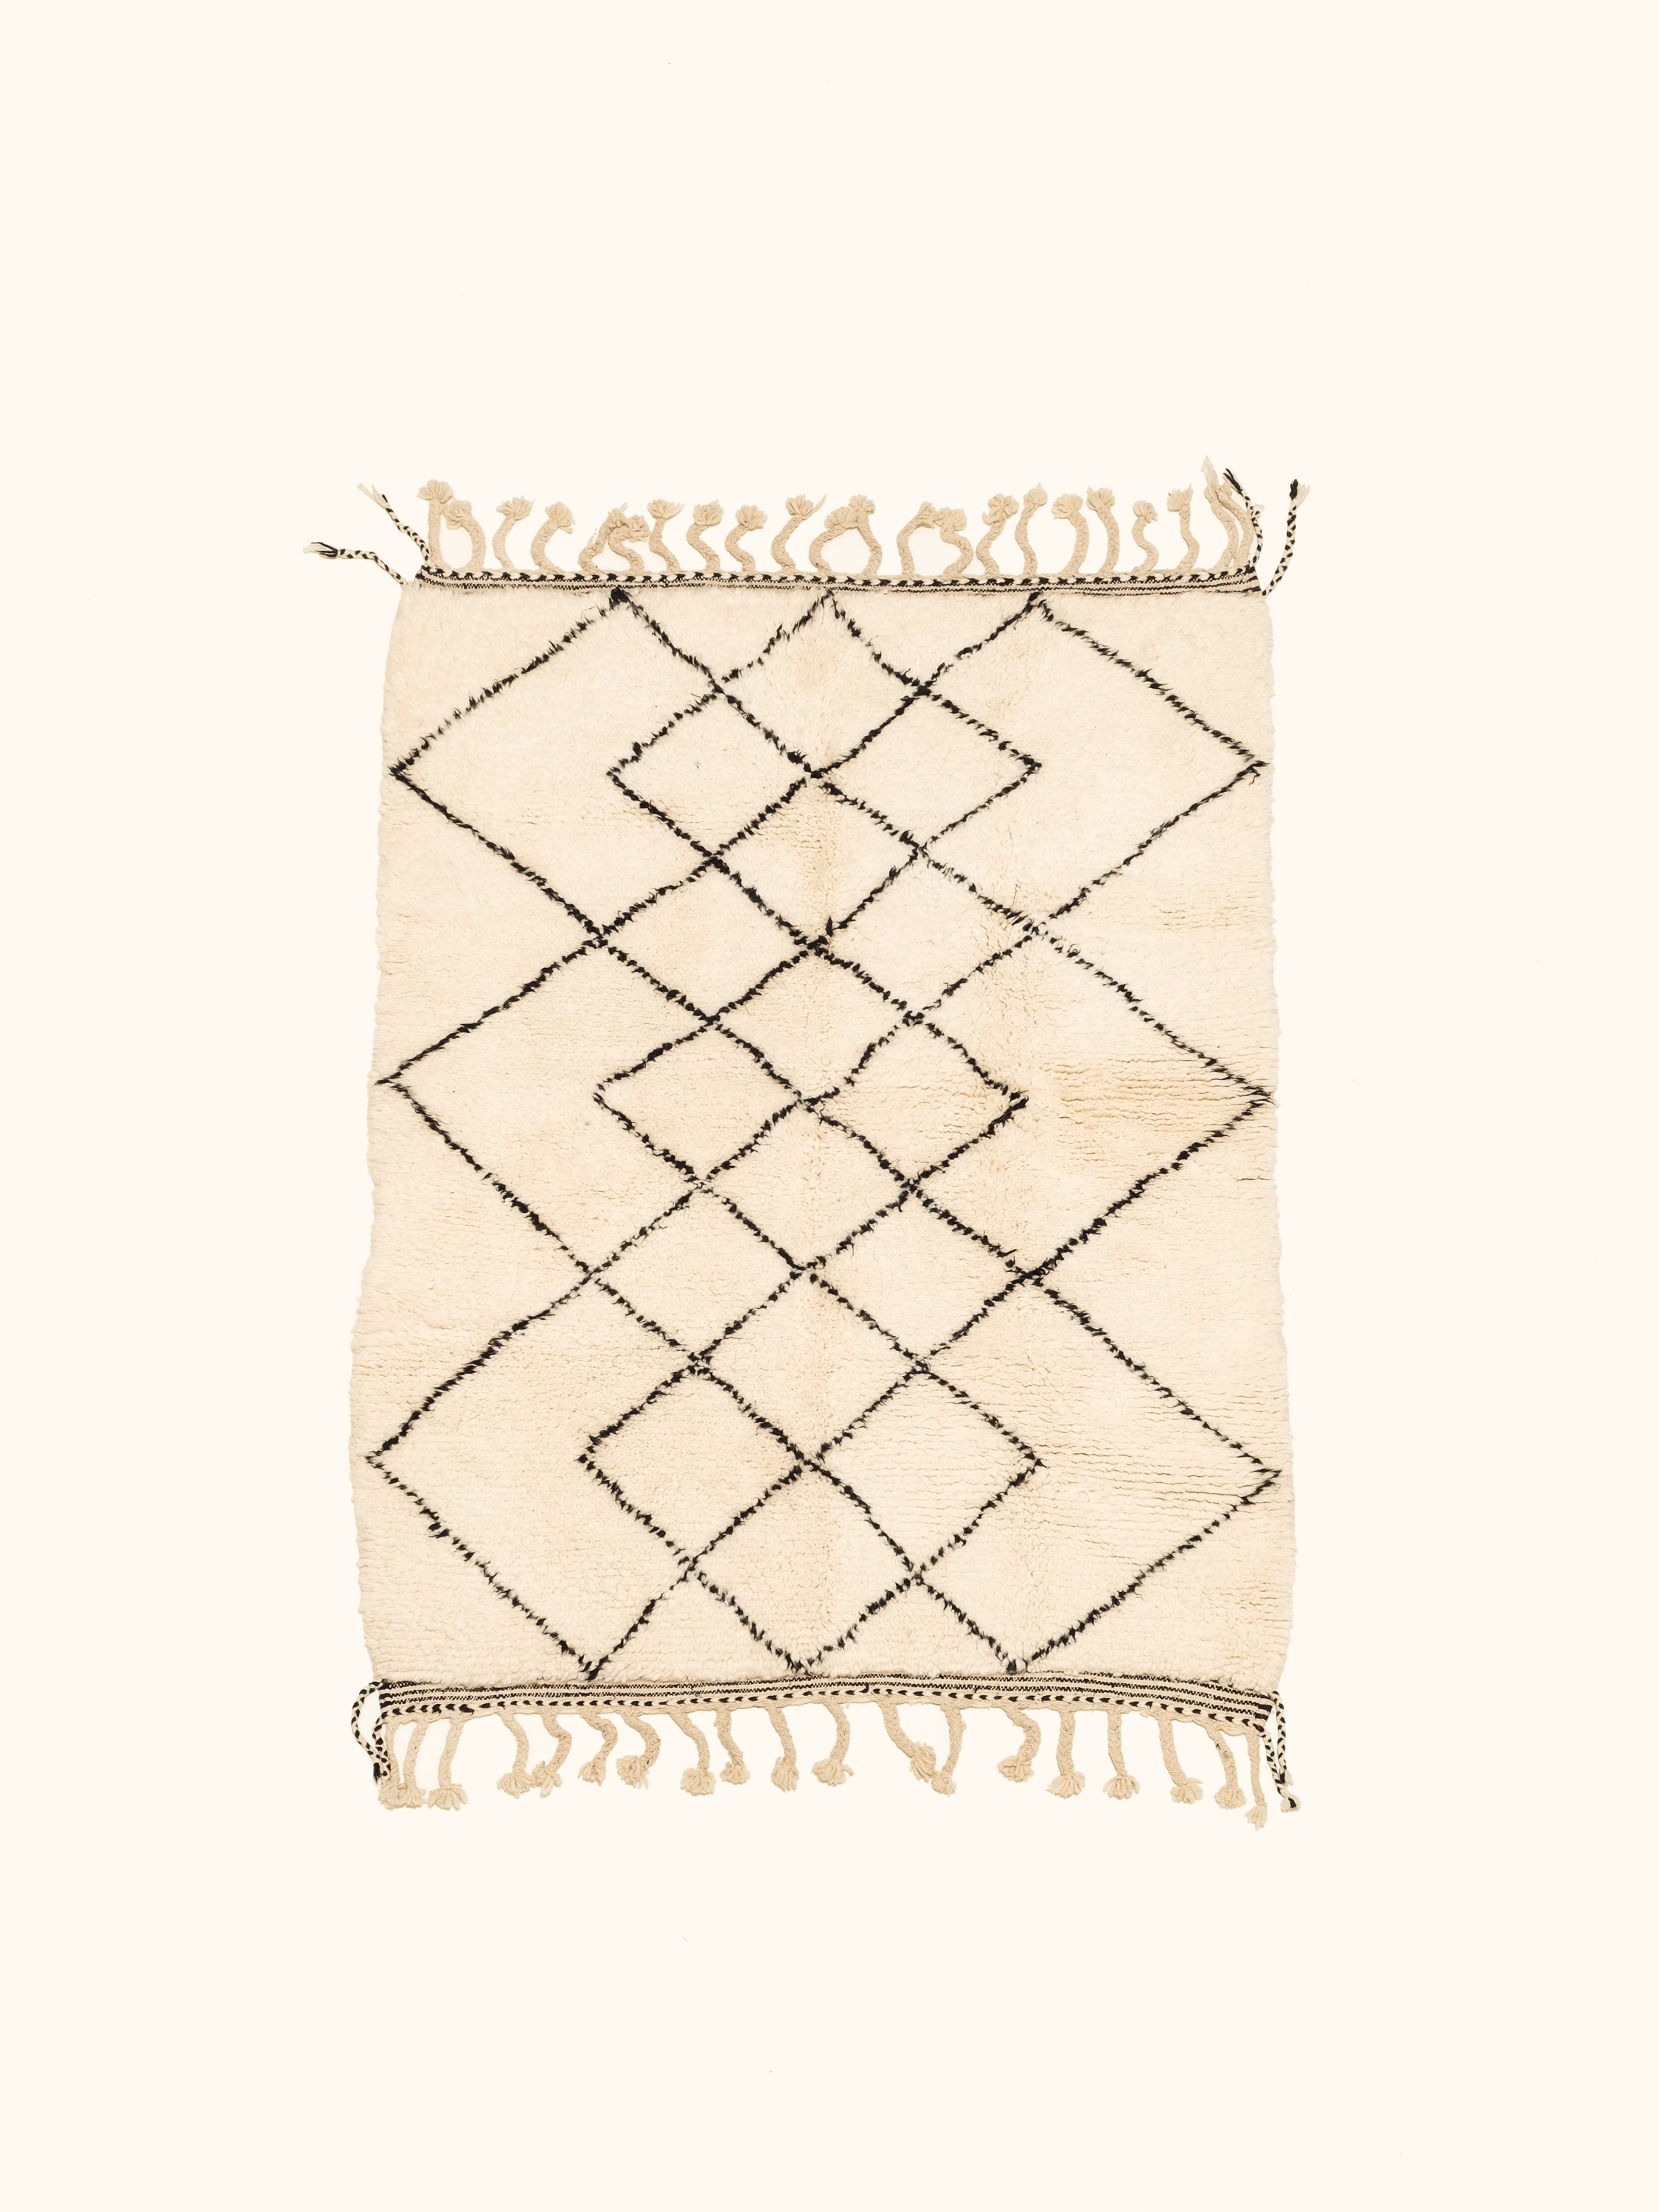 Vintage Moroccan Wool Rug | 193 x 143 cm